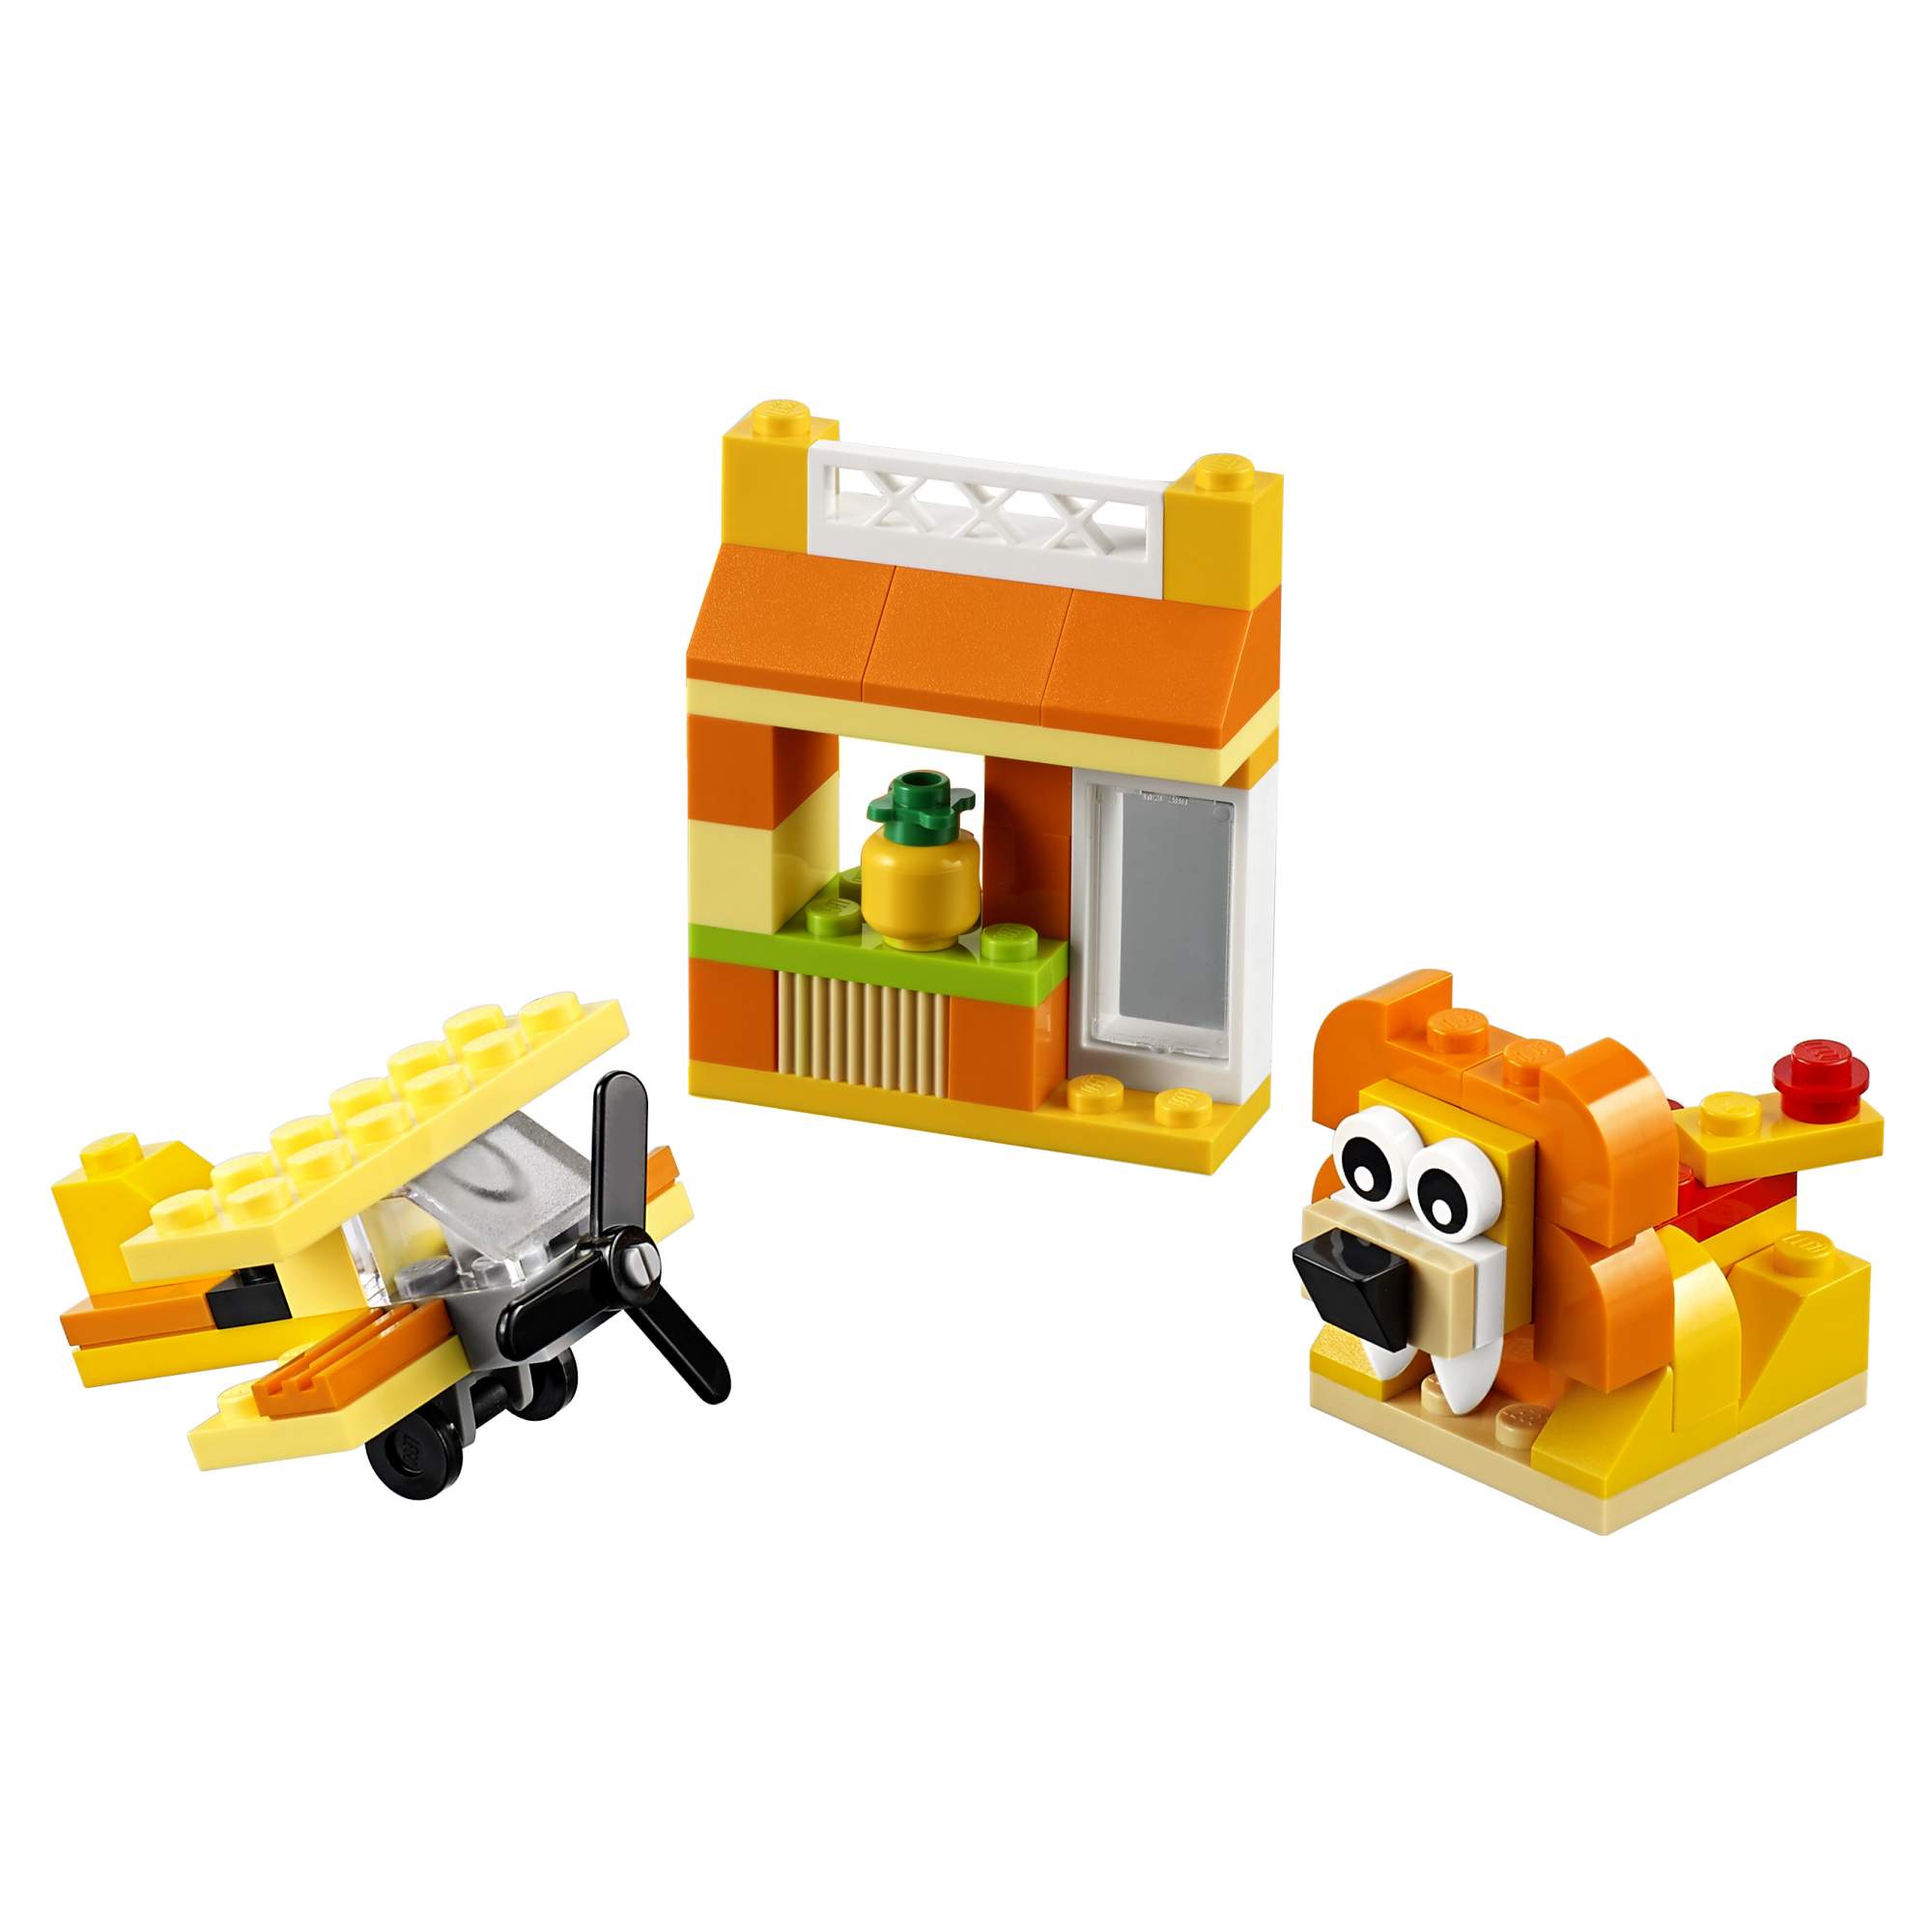 Конструктор LEGO Classic Оранжевый набор для творчества (10709) - купить в Shop-device ДСМ, цена на Мегамаркет